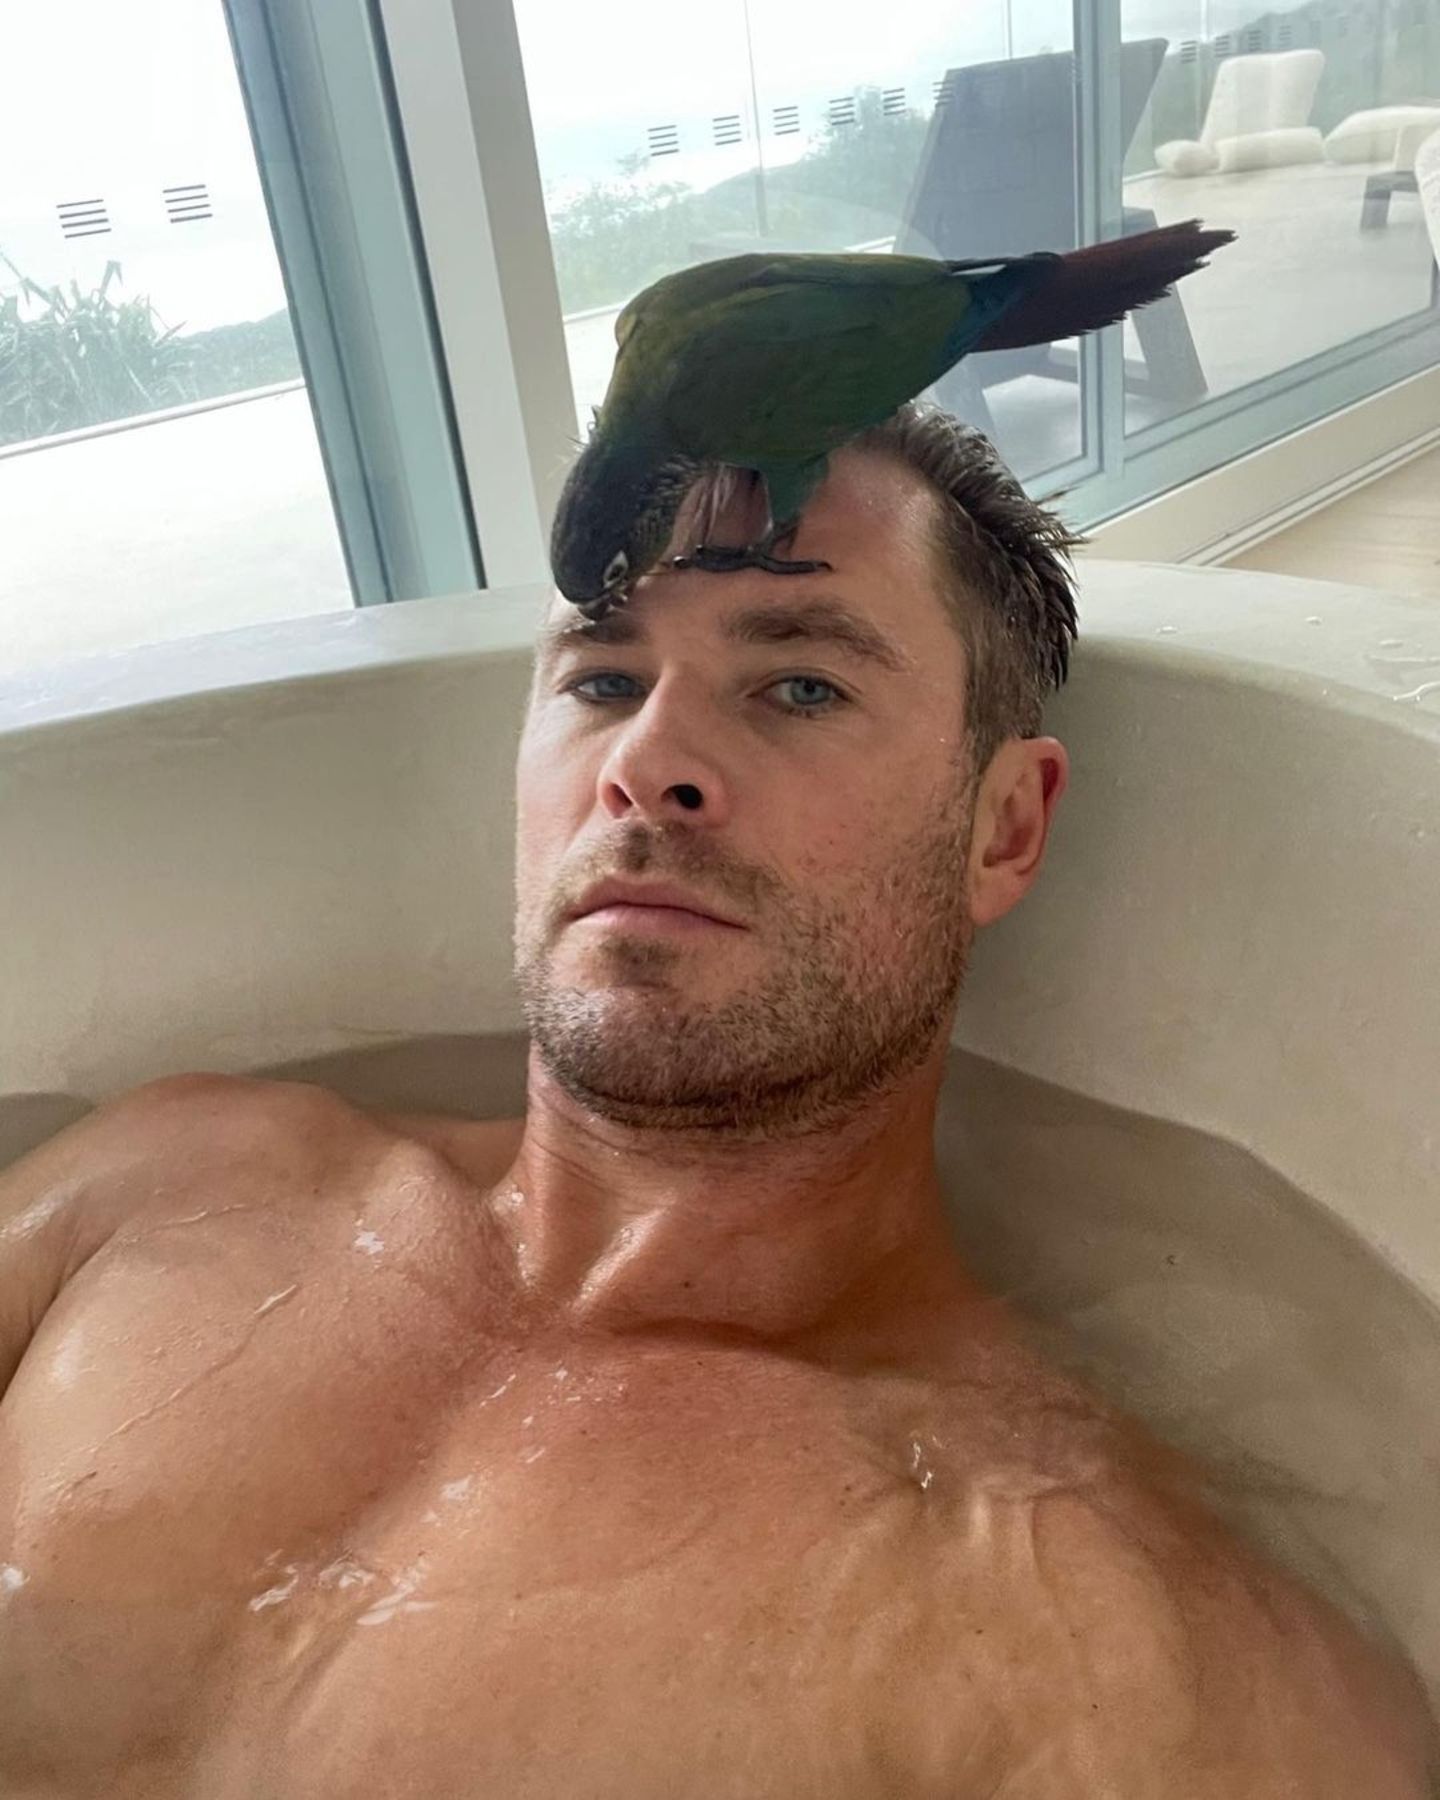 Familie: Chris Hemsworth mit Papagei in Badewanne - Geburtstagsgruß